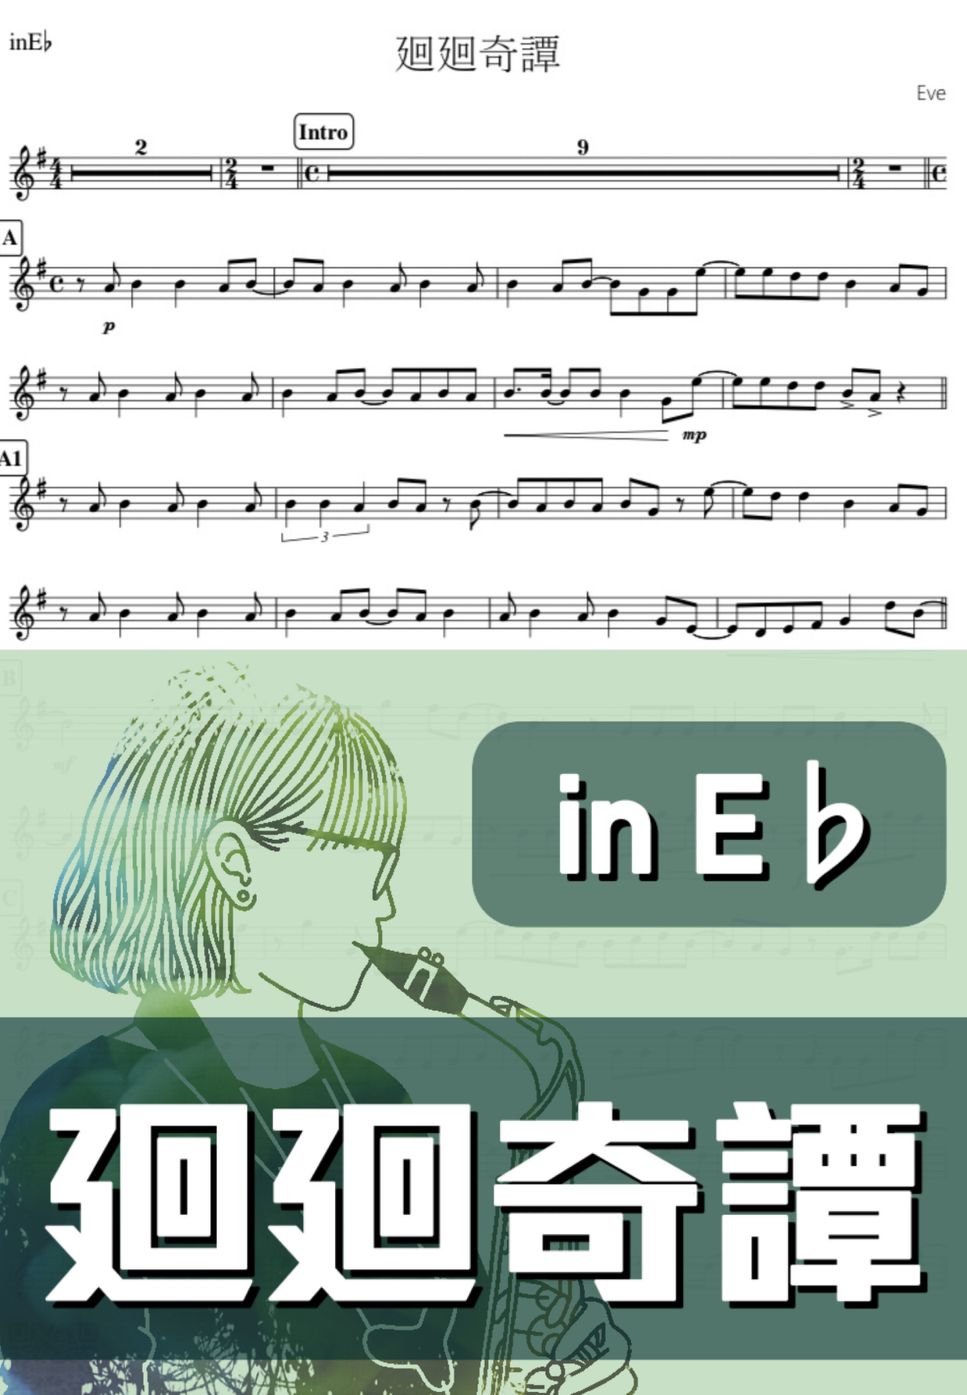 呪術廻戦 - 廻廻奇譚 (E♭) by kanamusic